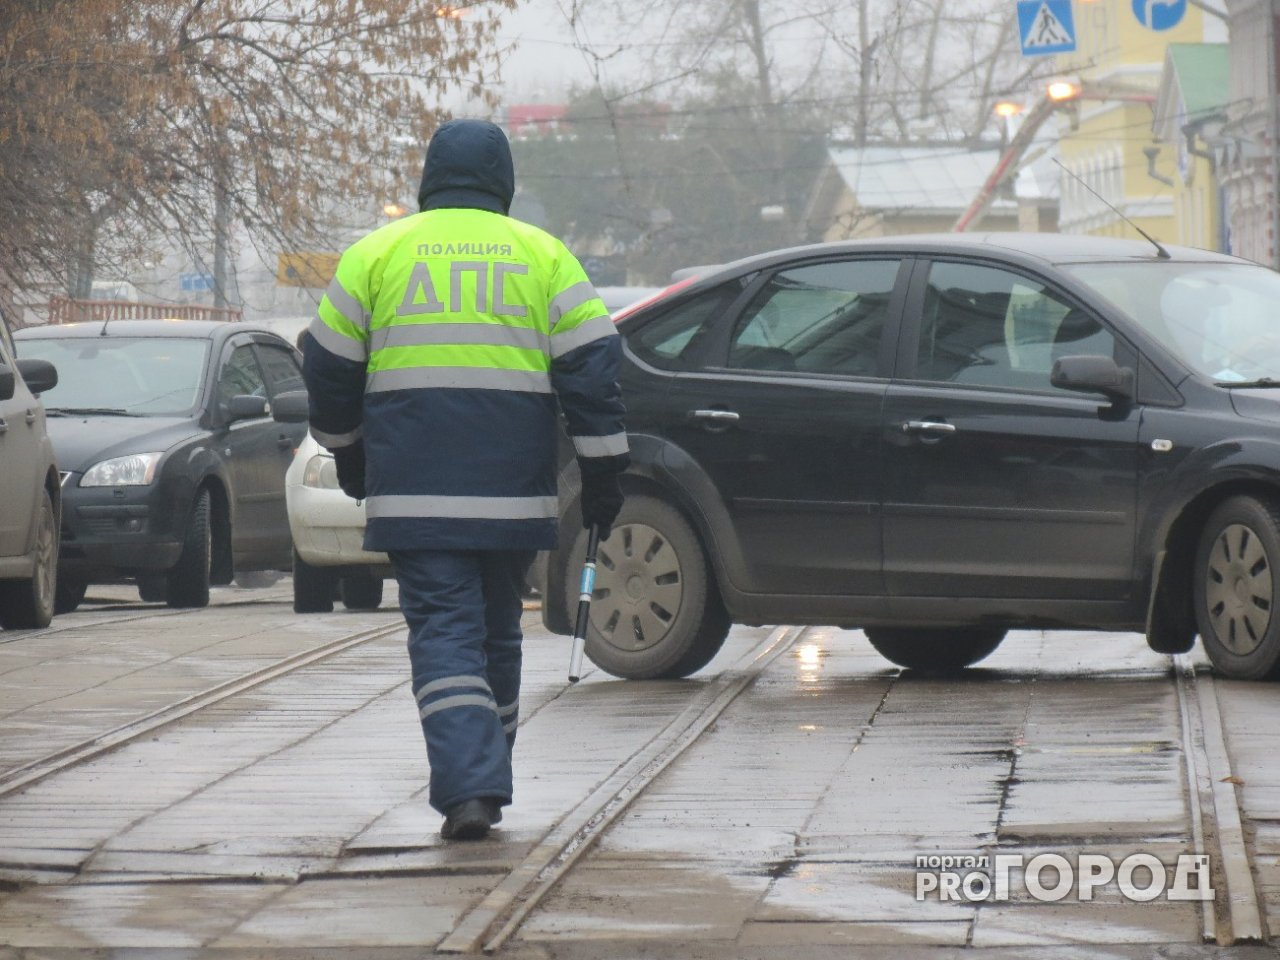 «Митцубиси» протаранил «Мерседес» на трассе в Краснобаковском районе: есть погибшие (ФОТО)